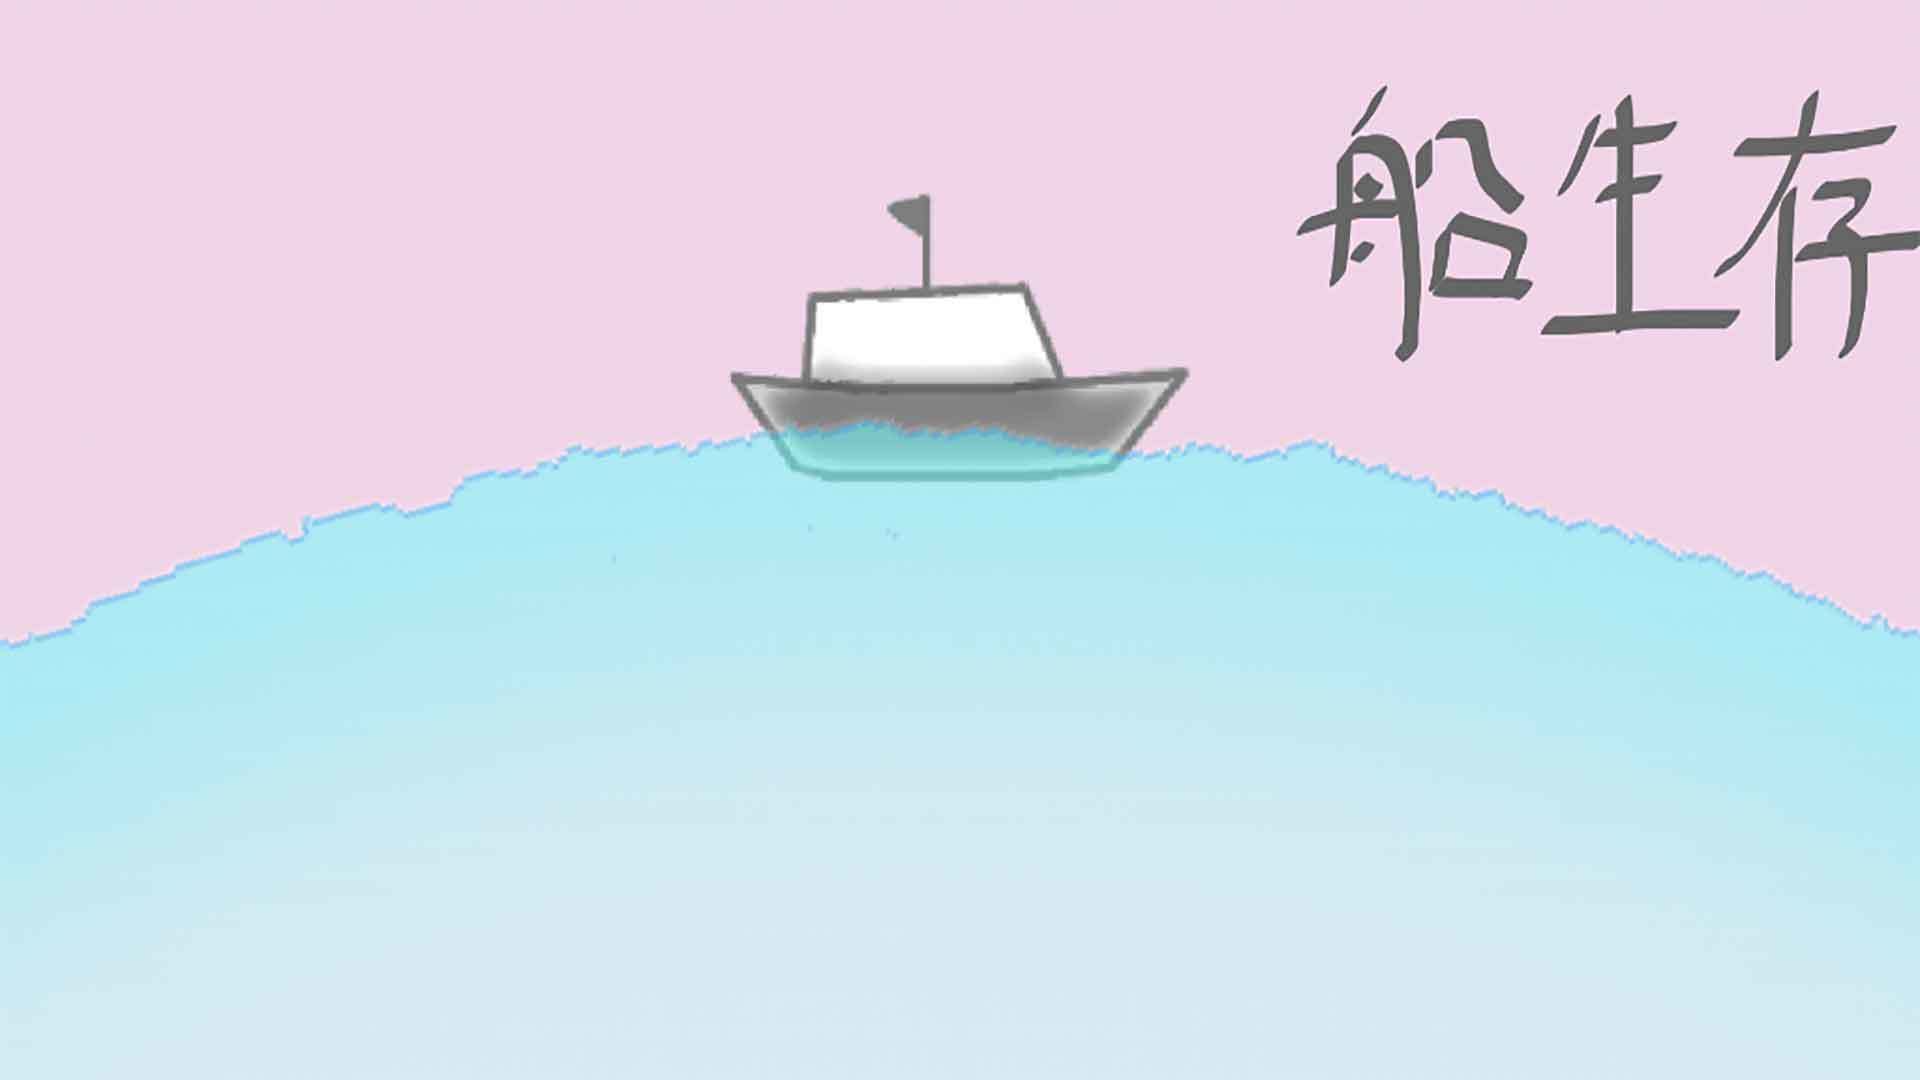 Banner of barco de supervivencia 